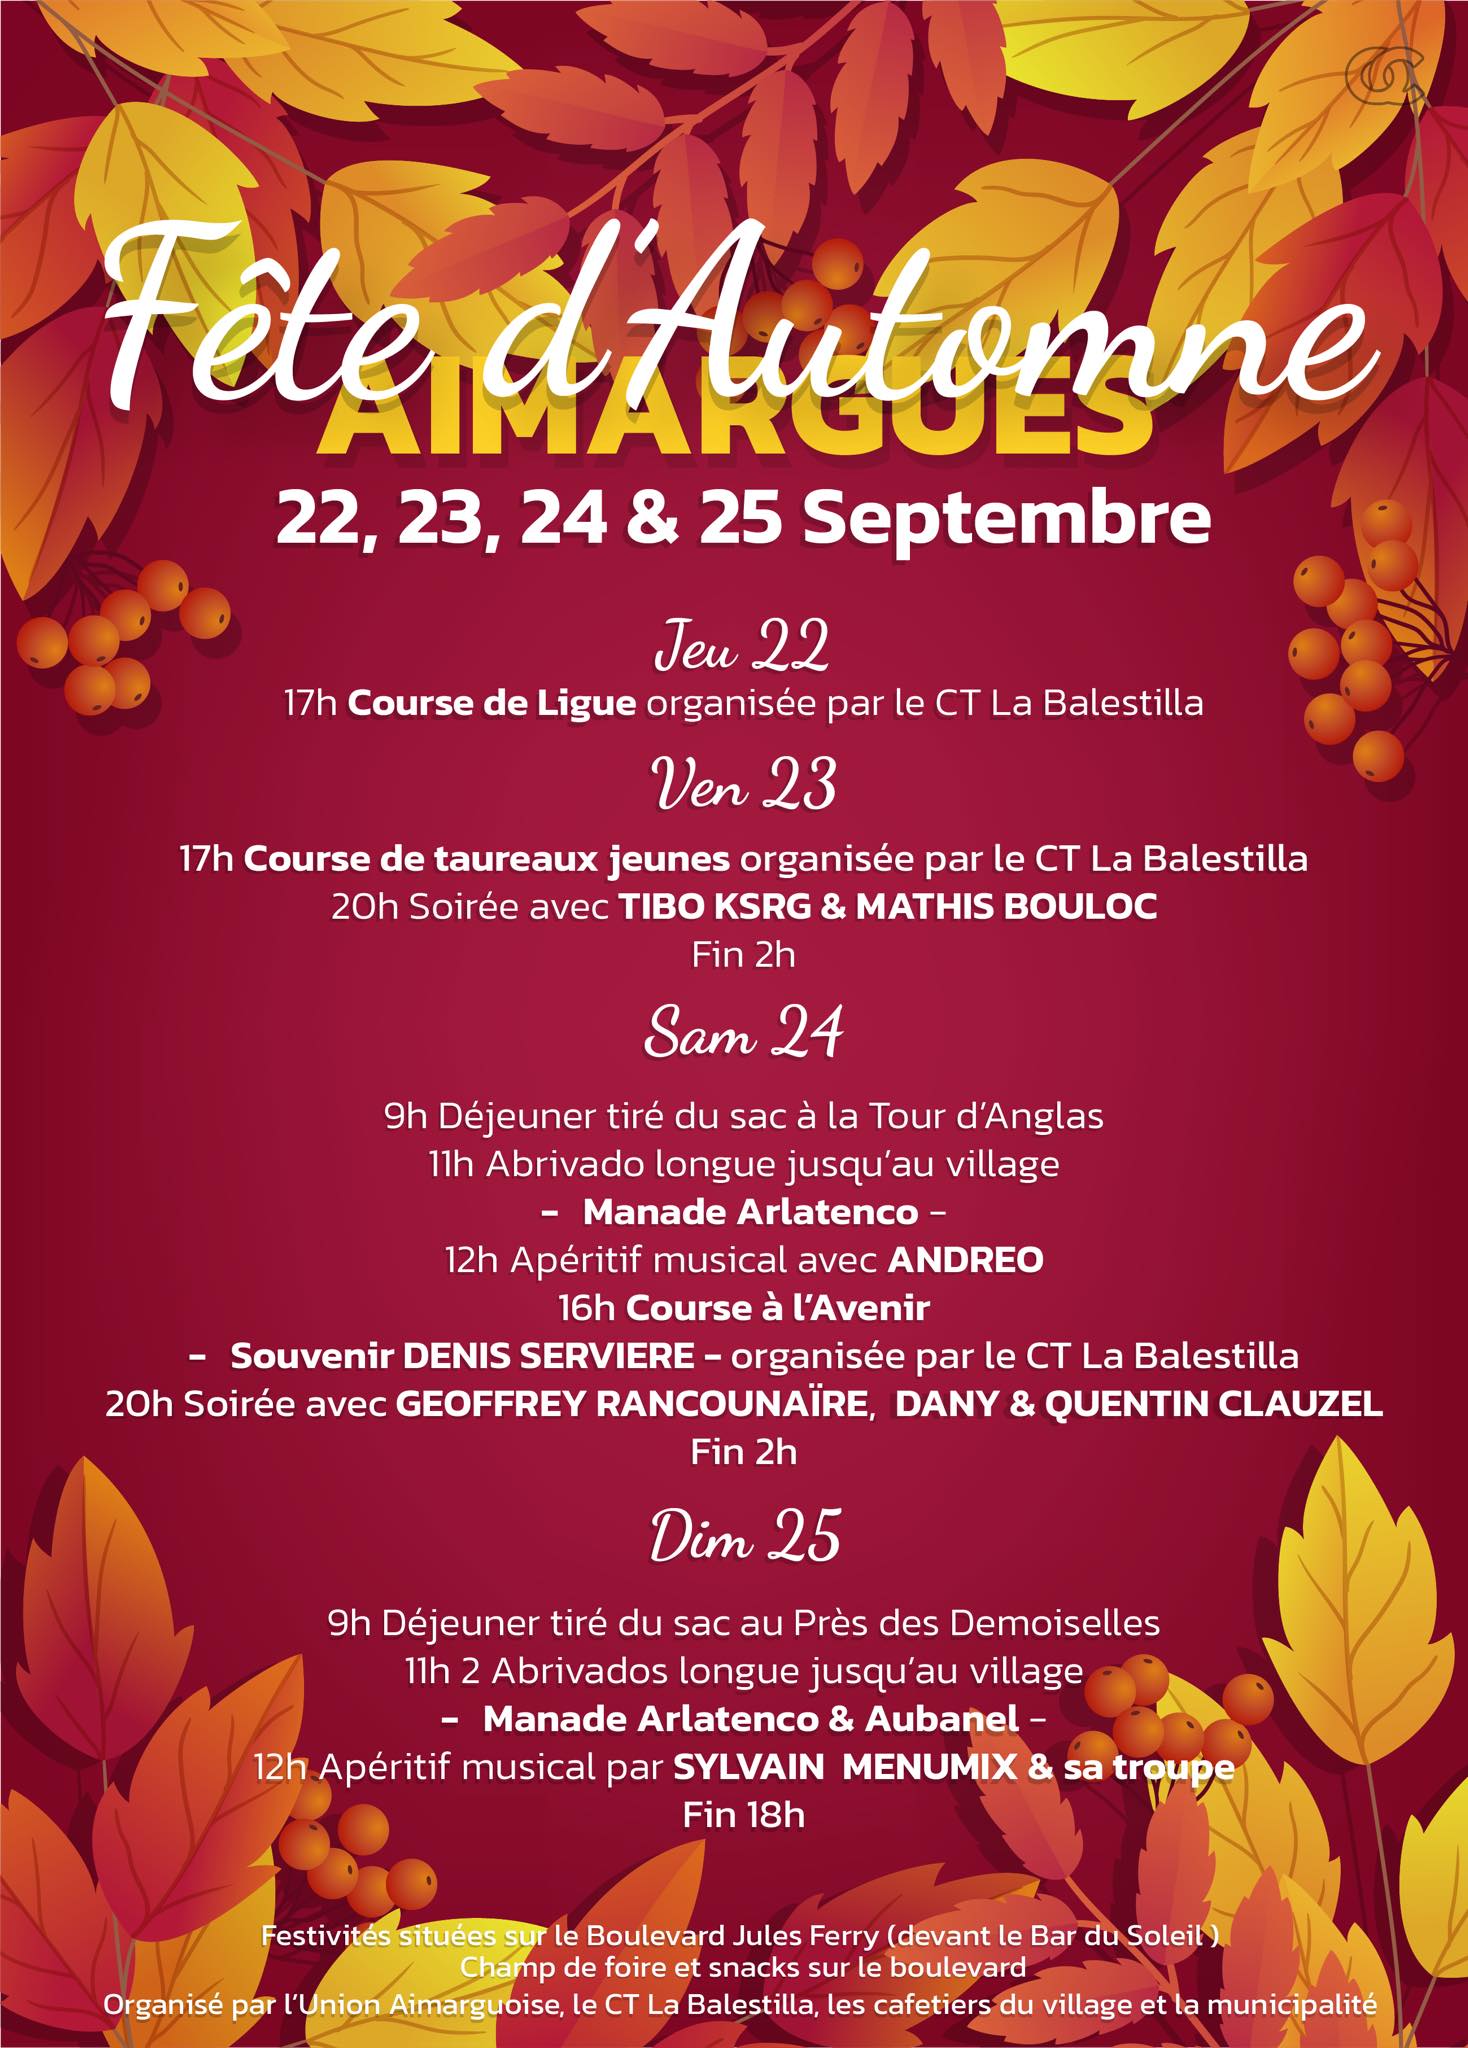 Tradition camarguaise - Fête de l'Automne du 23 au 25 septembre 2022 à Aimargues